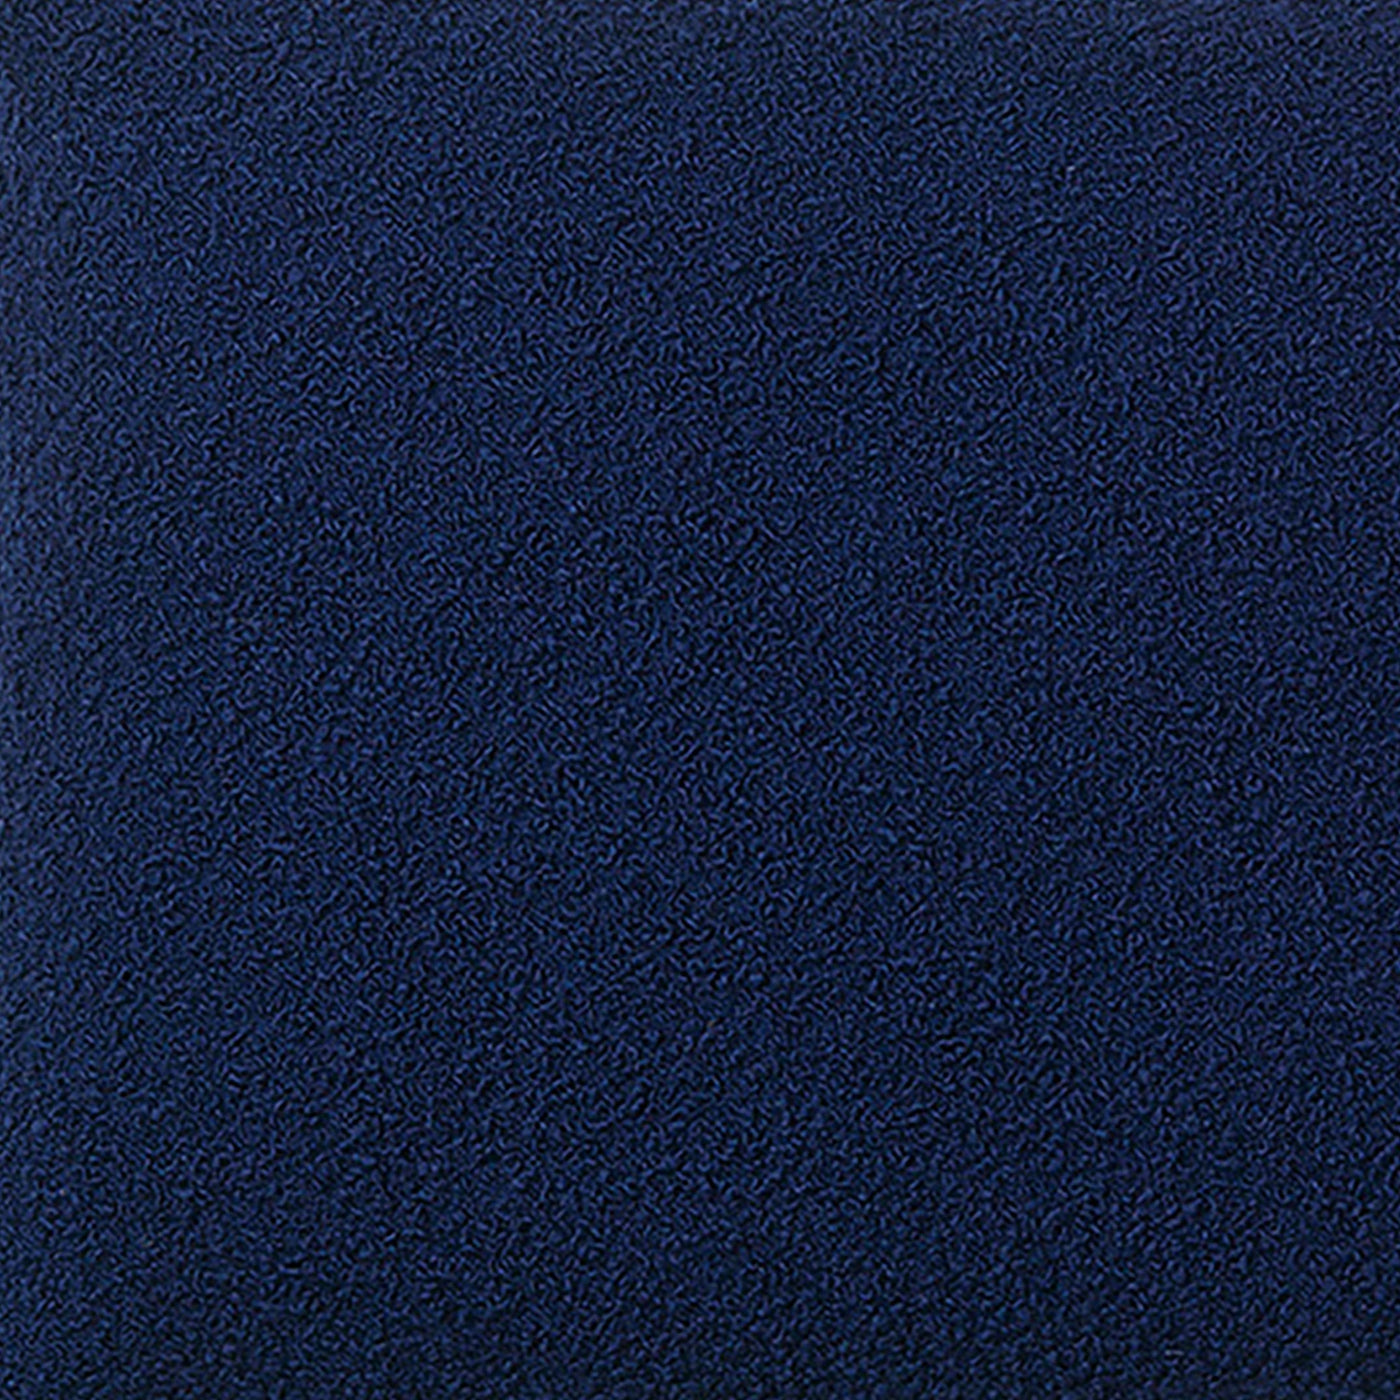 deep blue wool bouclé | Ferm LIVING sofa swatch | someday designs